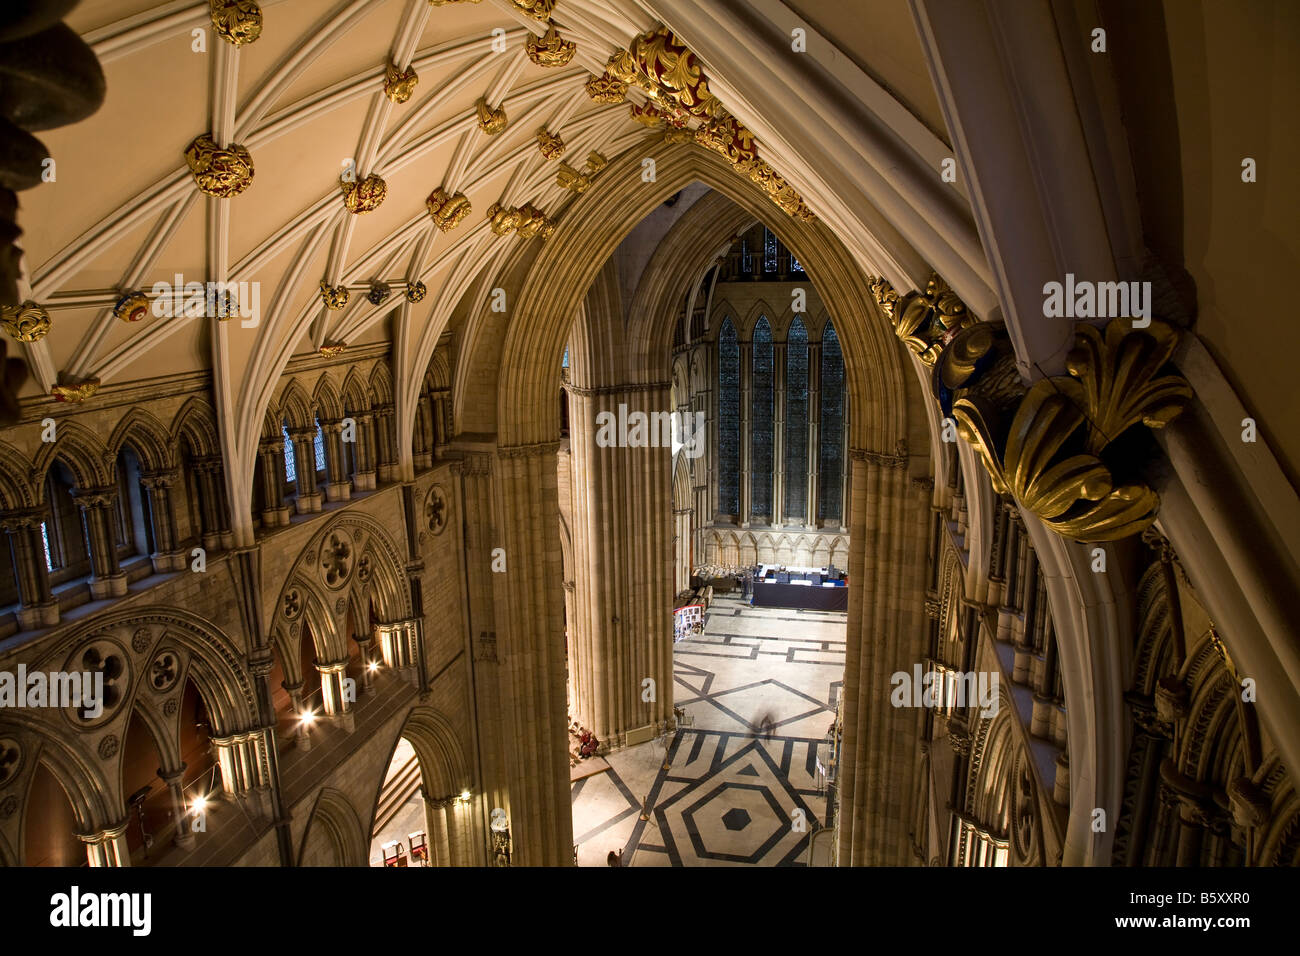 Le transept sud et le toit restauré de la cathédrale de York, York, Angleterre Banque D'Images